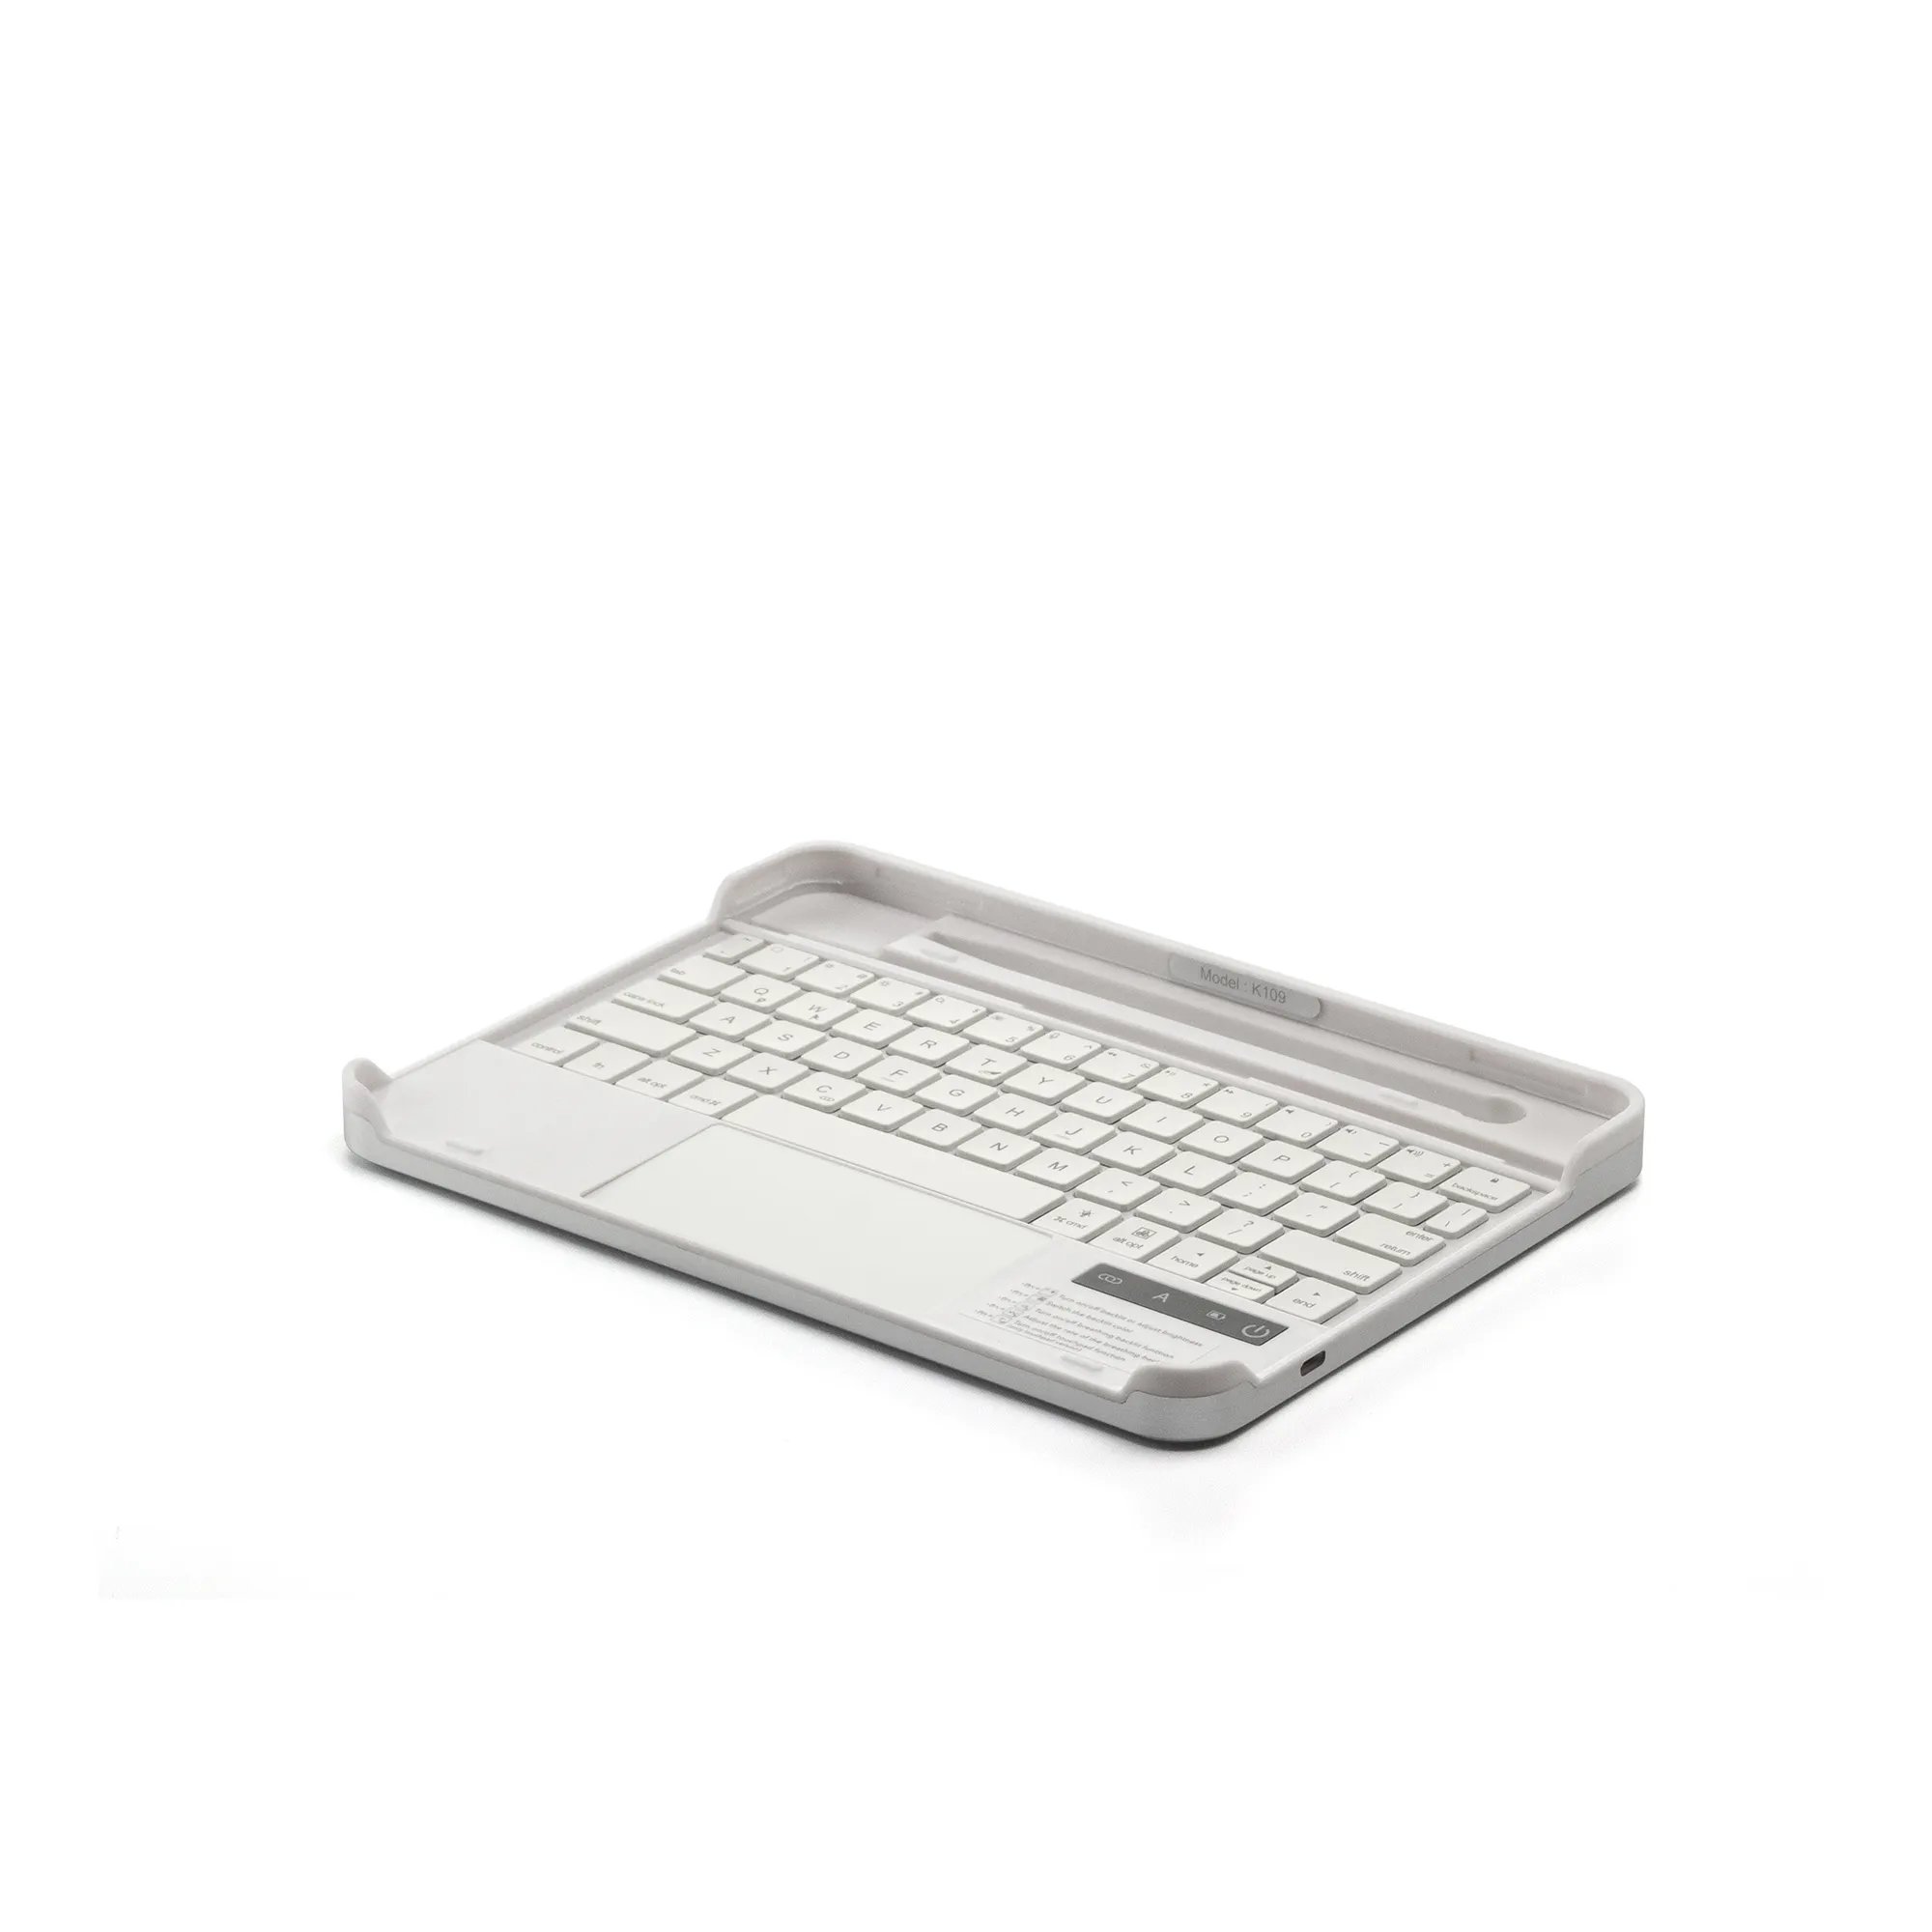 NUEVA llegada Hermoso teclado inalámbrico inteligente retroiluminado RGB para iPad Pro 11 pulgadas 2020 con ranura para lápiz